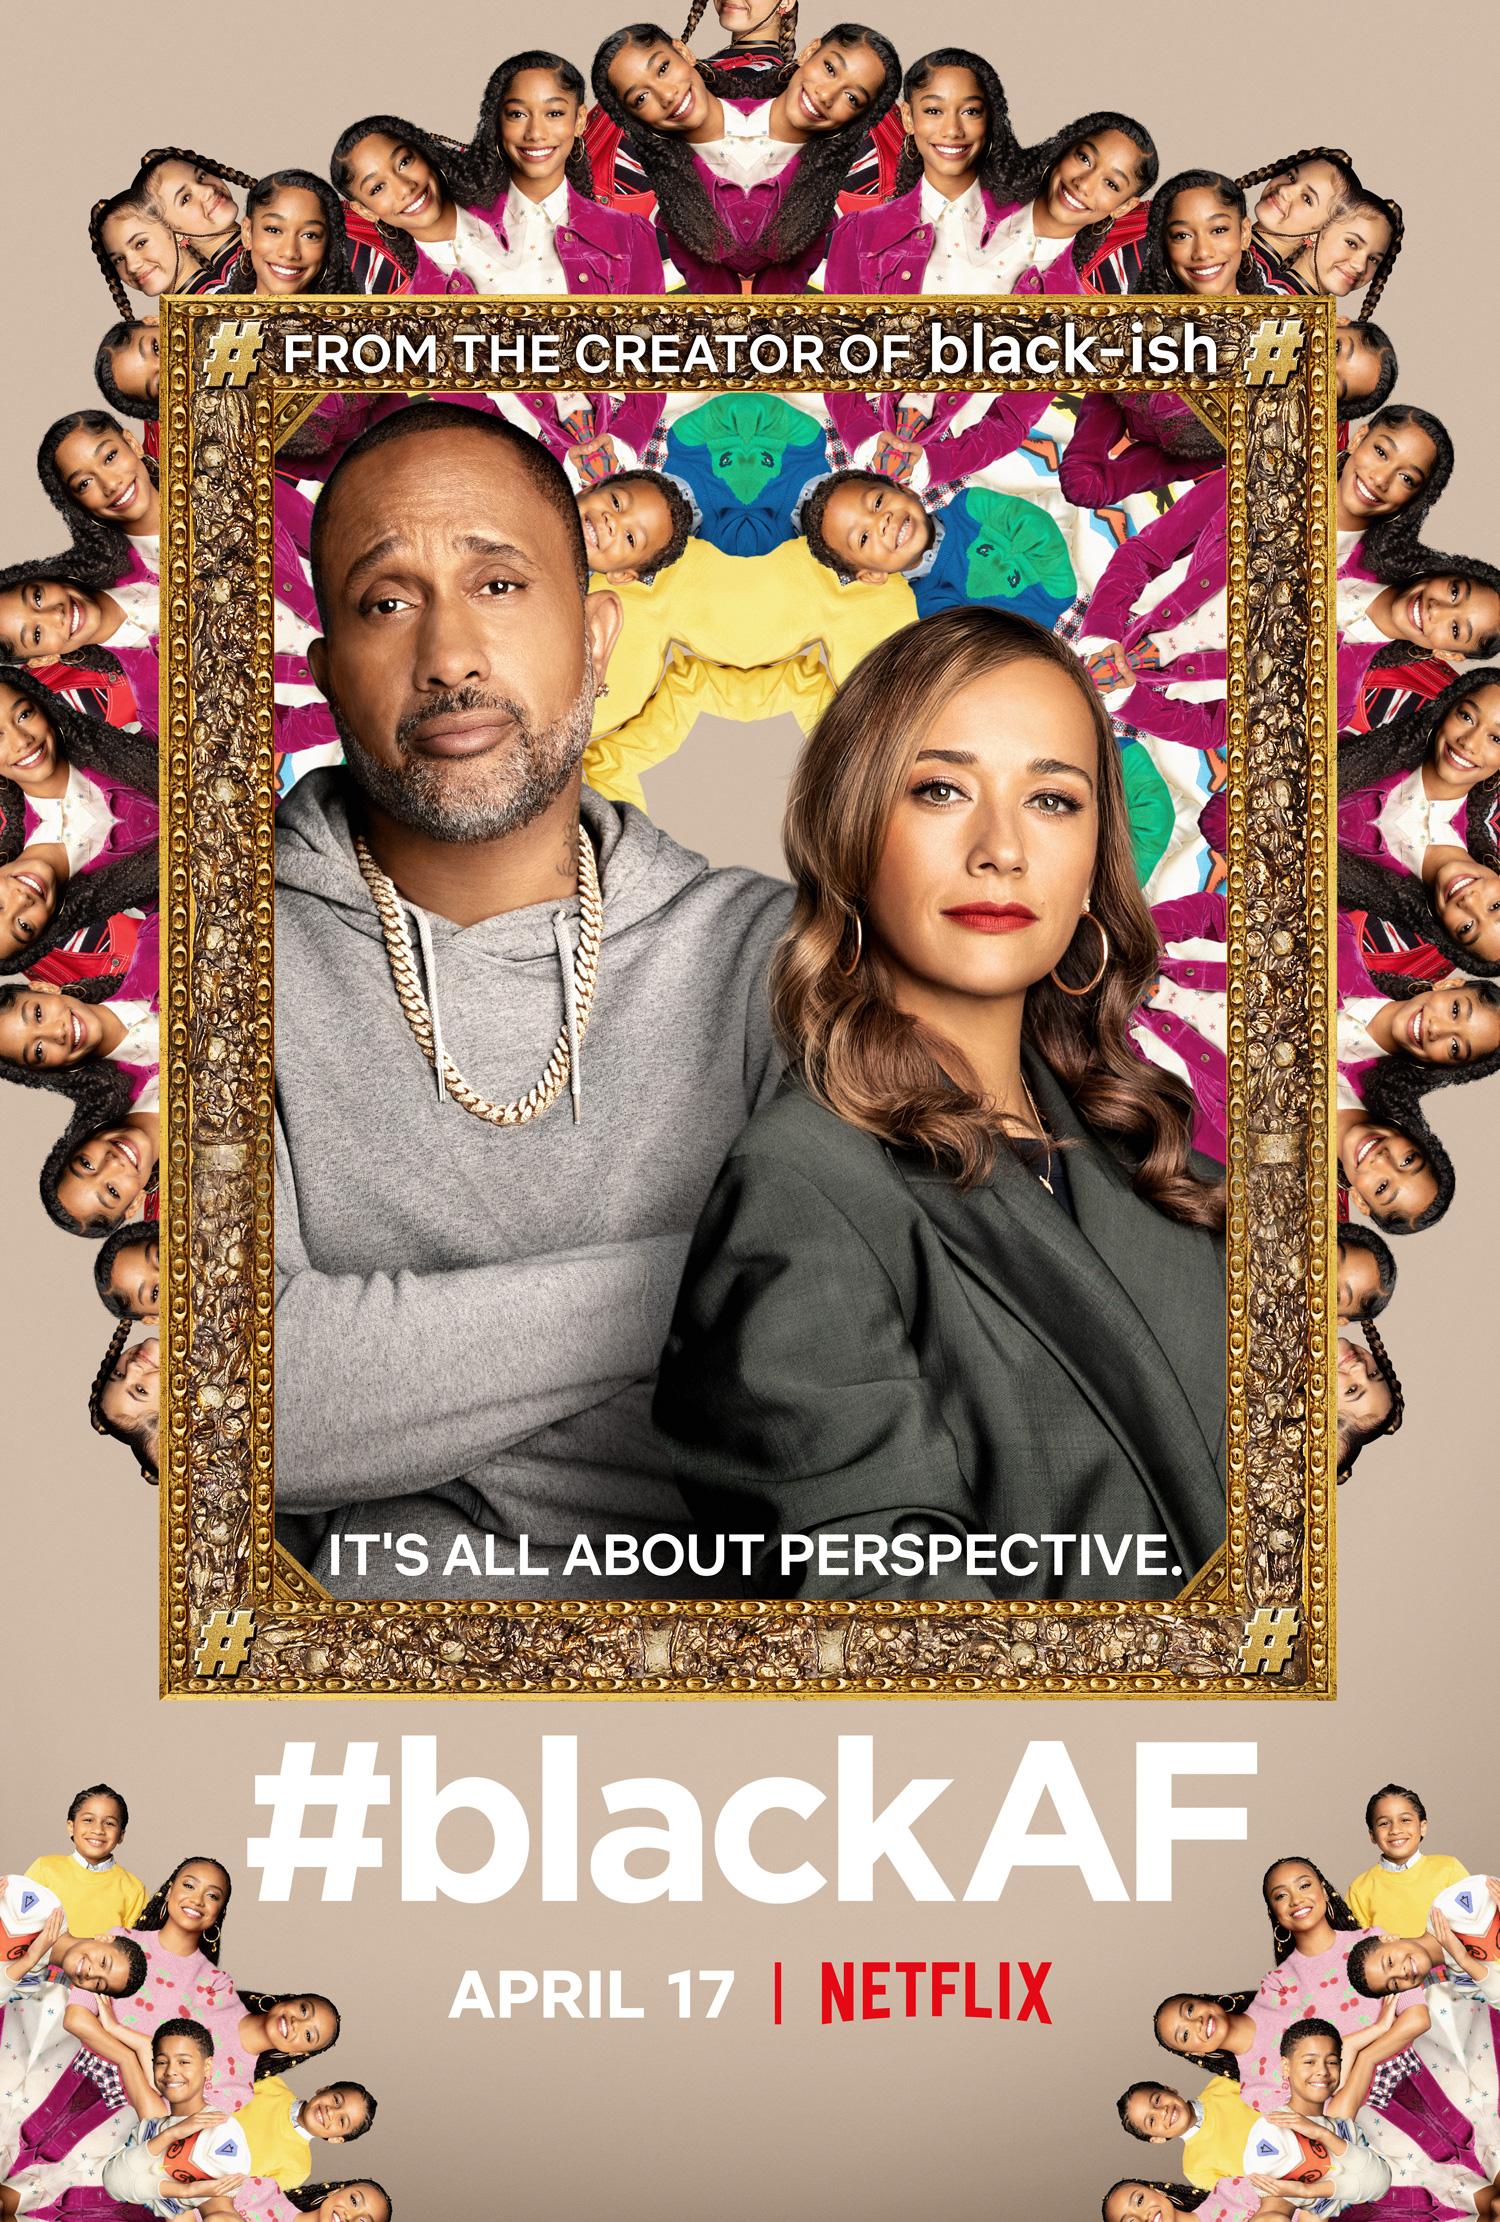 New Show: Netflix #blackAF